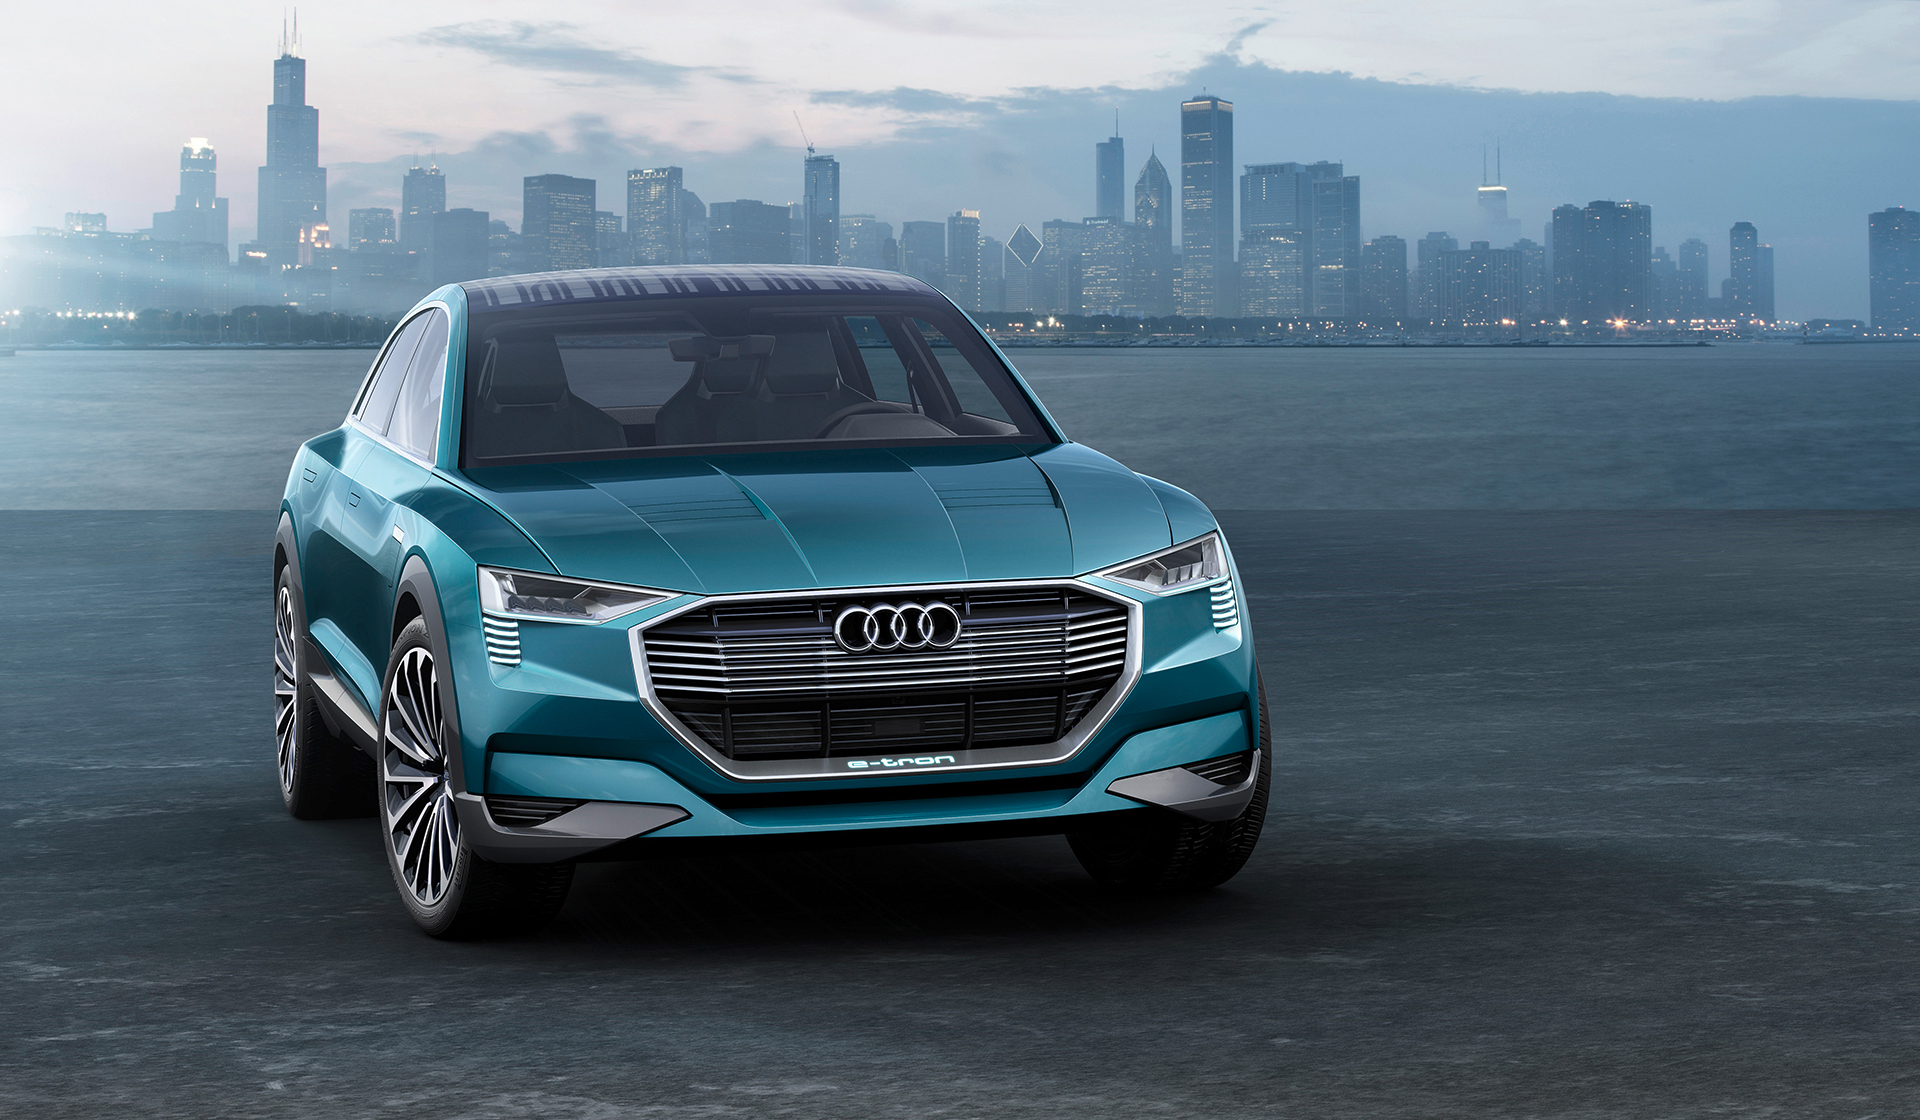 The Future Of Luxury: The Audi E Tron Quattro Concept